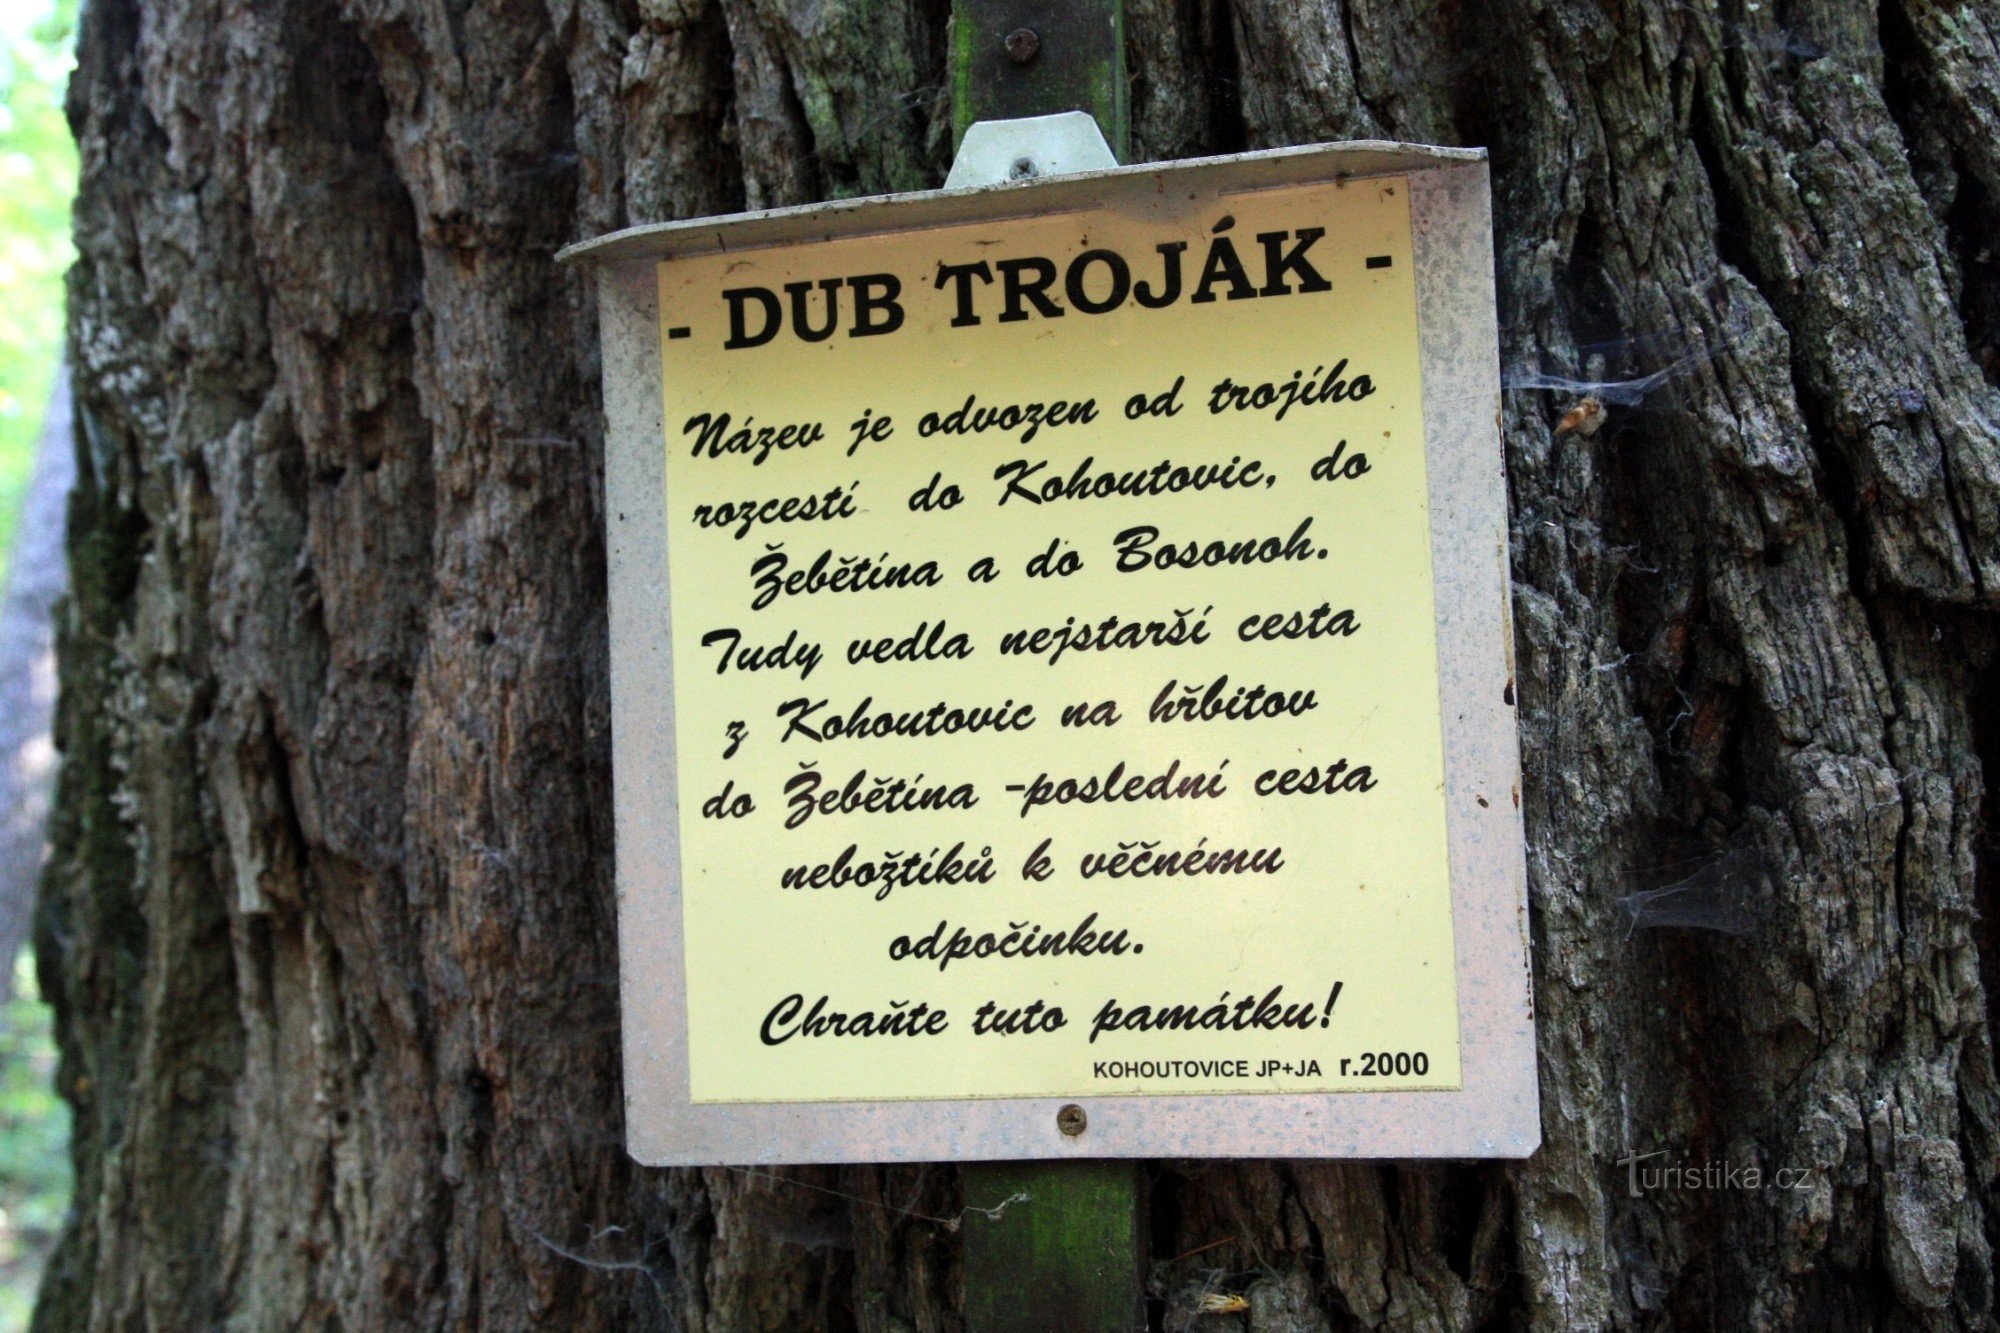 Tablica informacyjna na drzewie